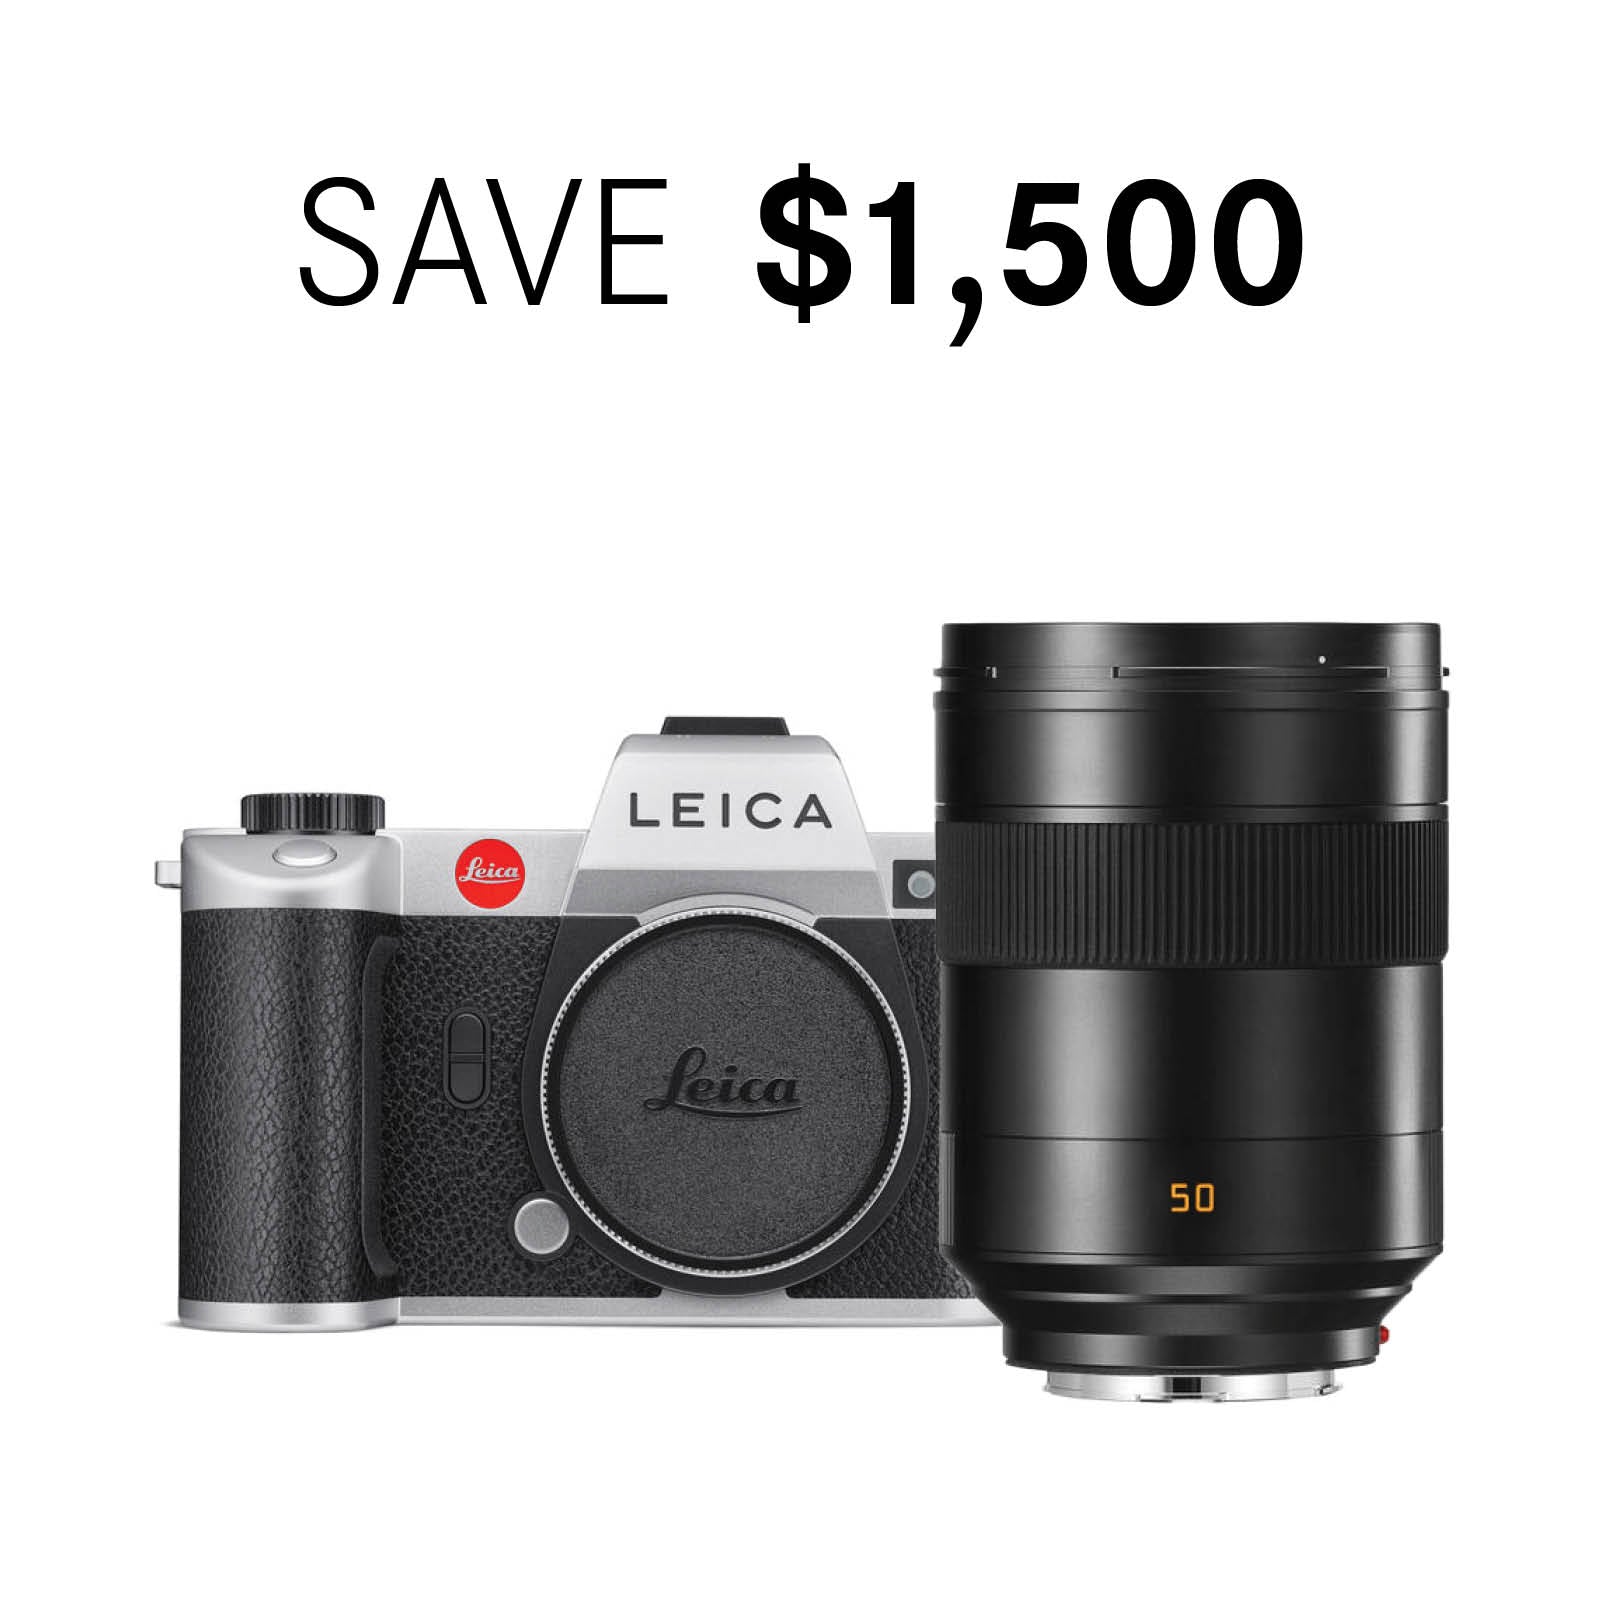 Leica SL2 Silver Edition Bundle with Summilux-SL 50mm f/1.4 ASPH